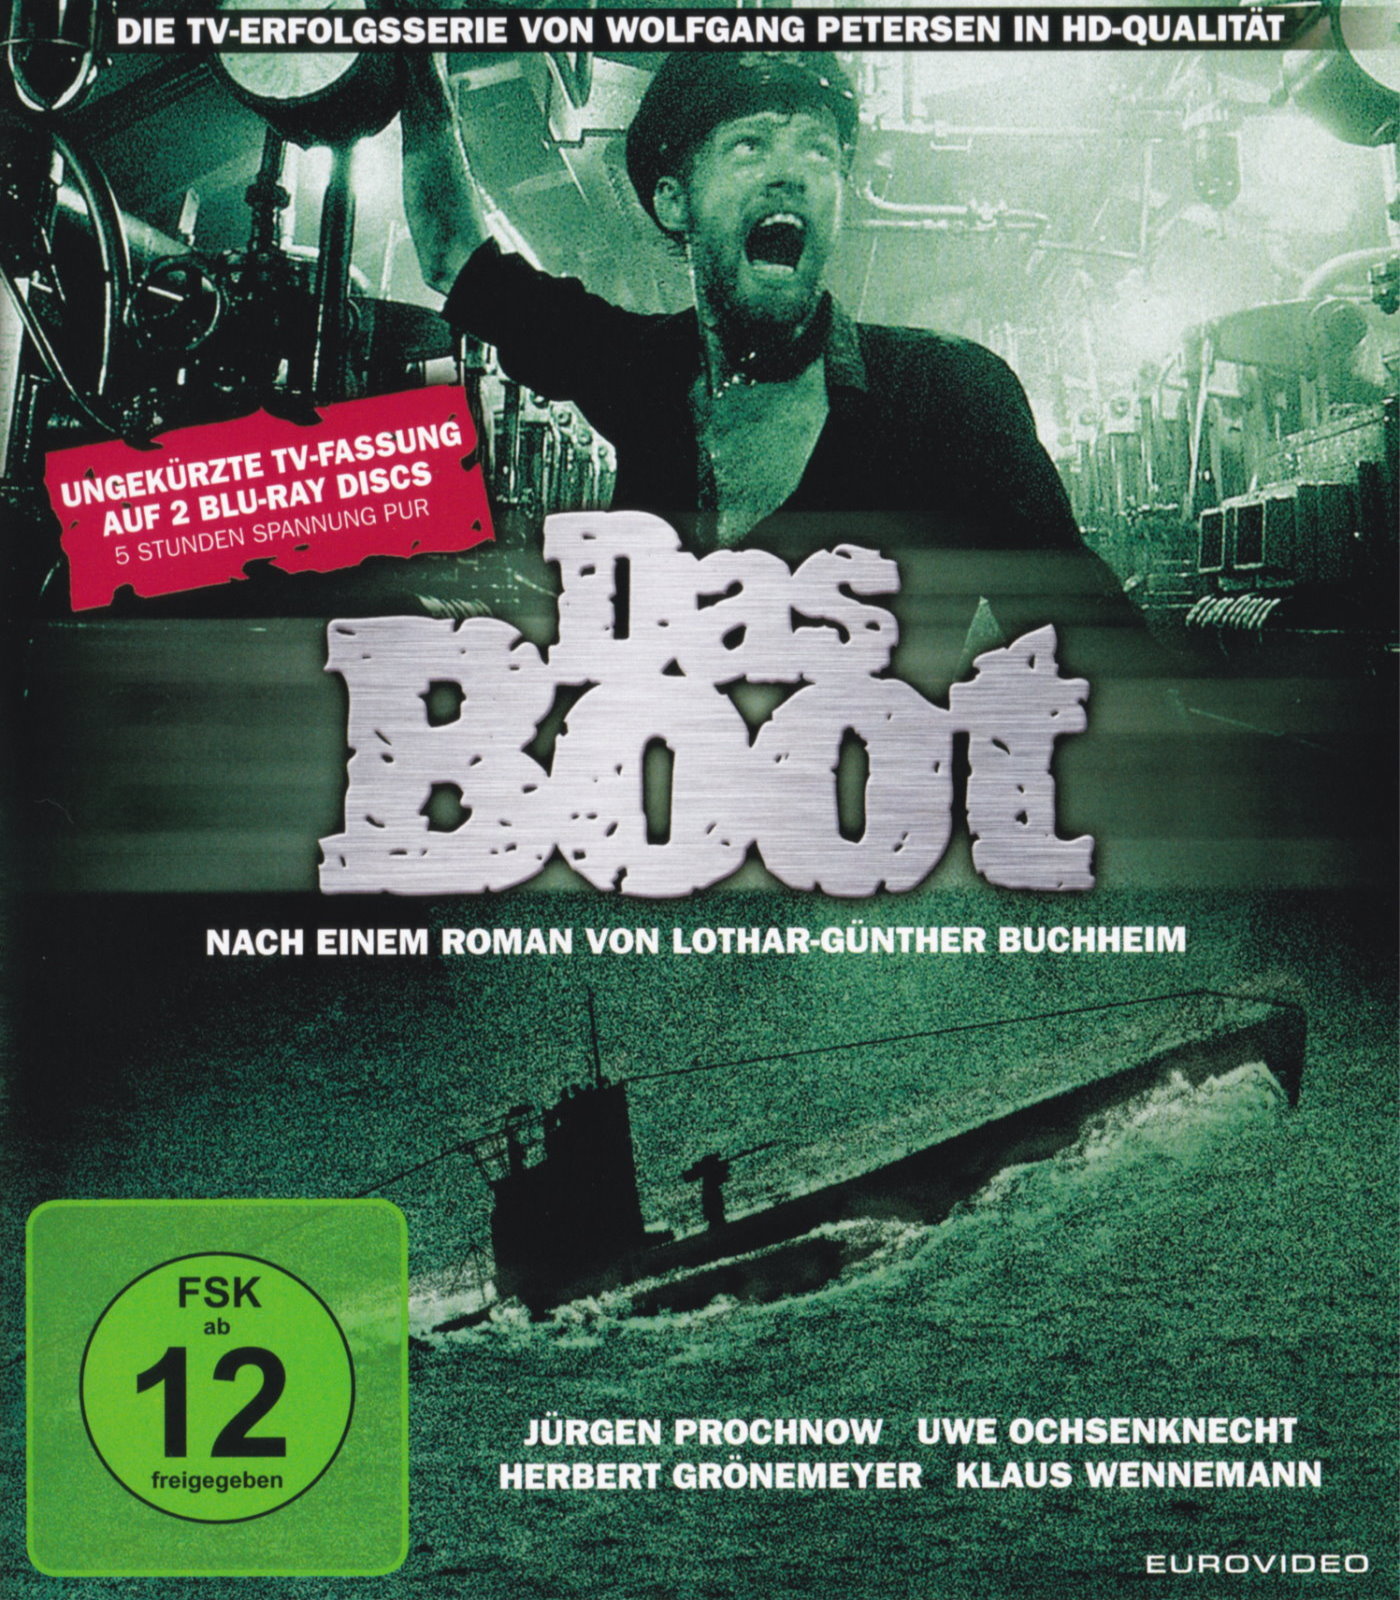 Cover - Das Boot.jpg